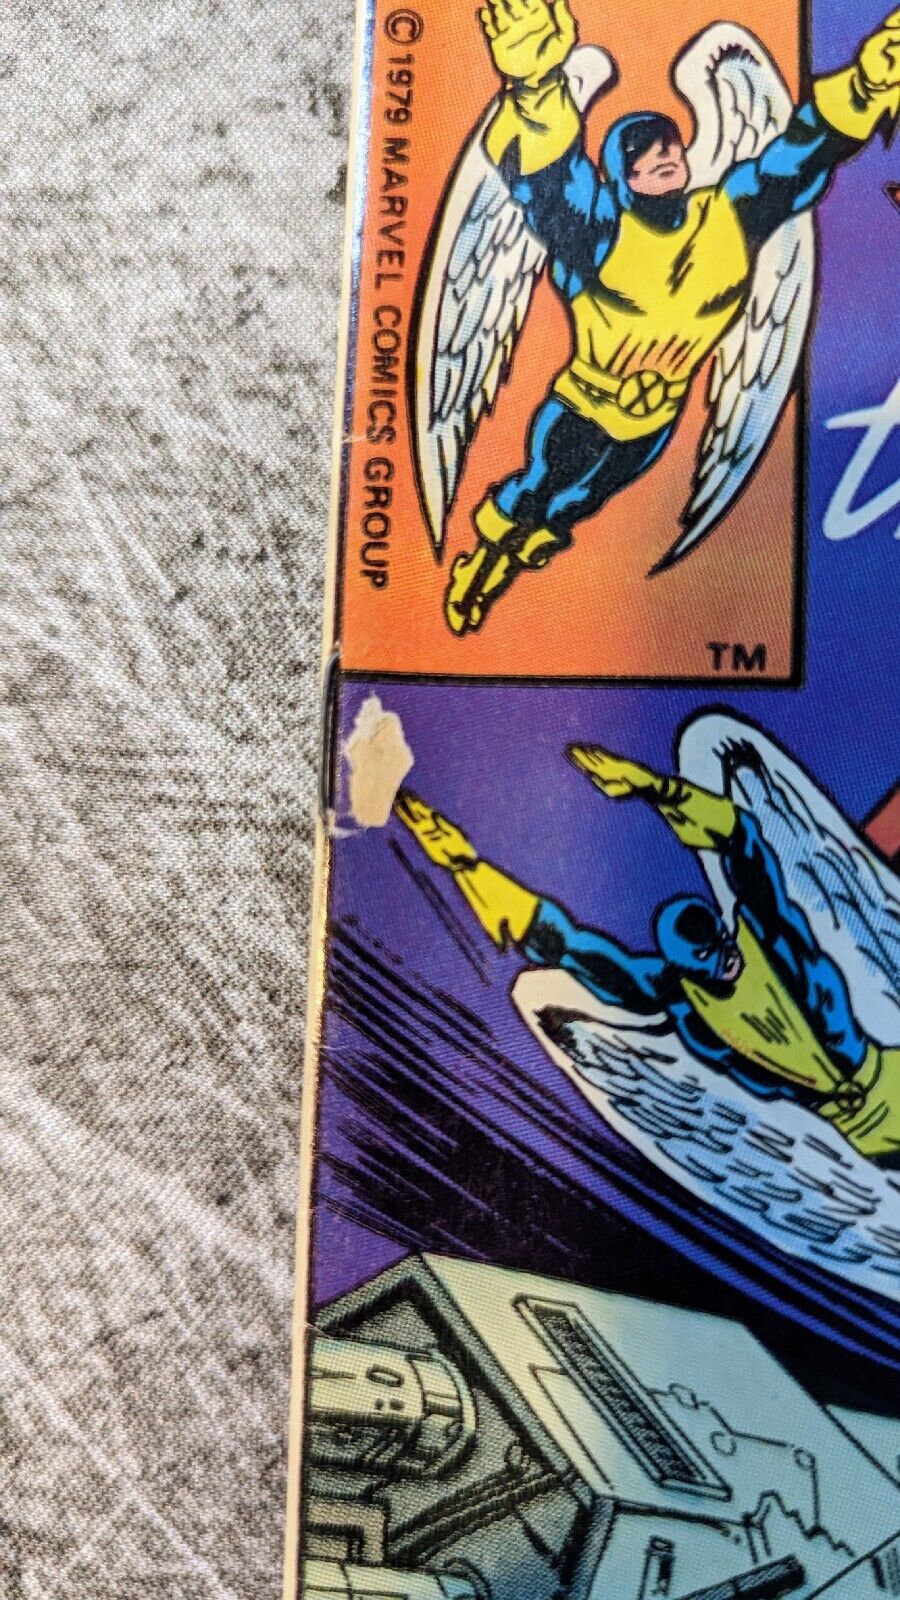 X-Men Amazing Adventures #1 and  #8 Marvel - 1980